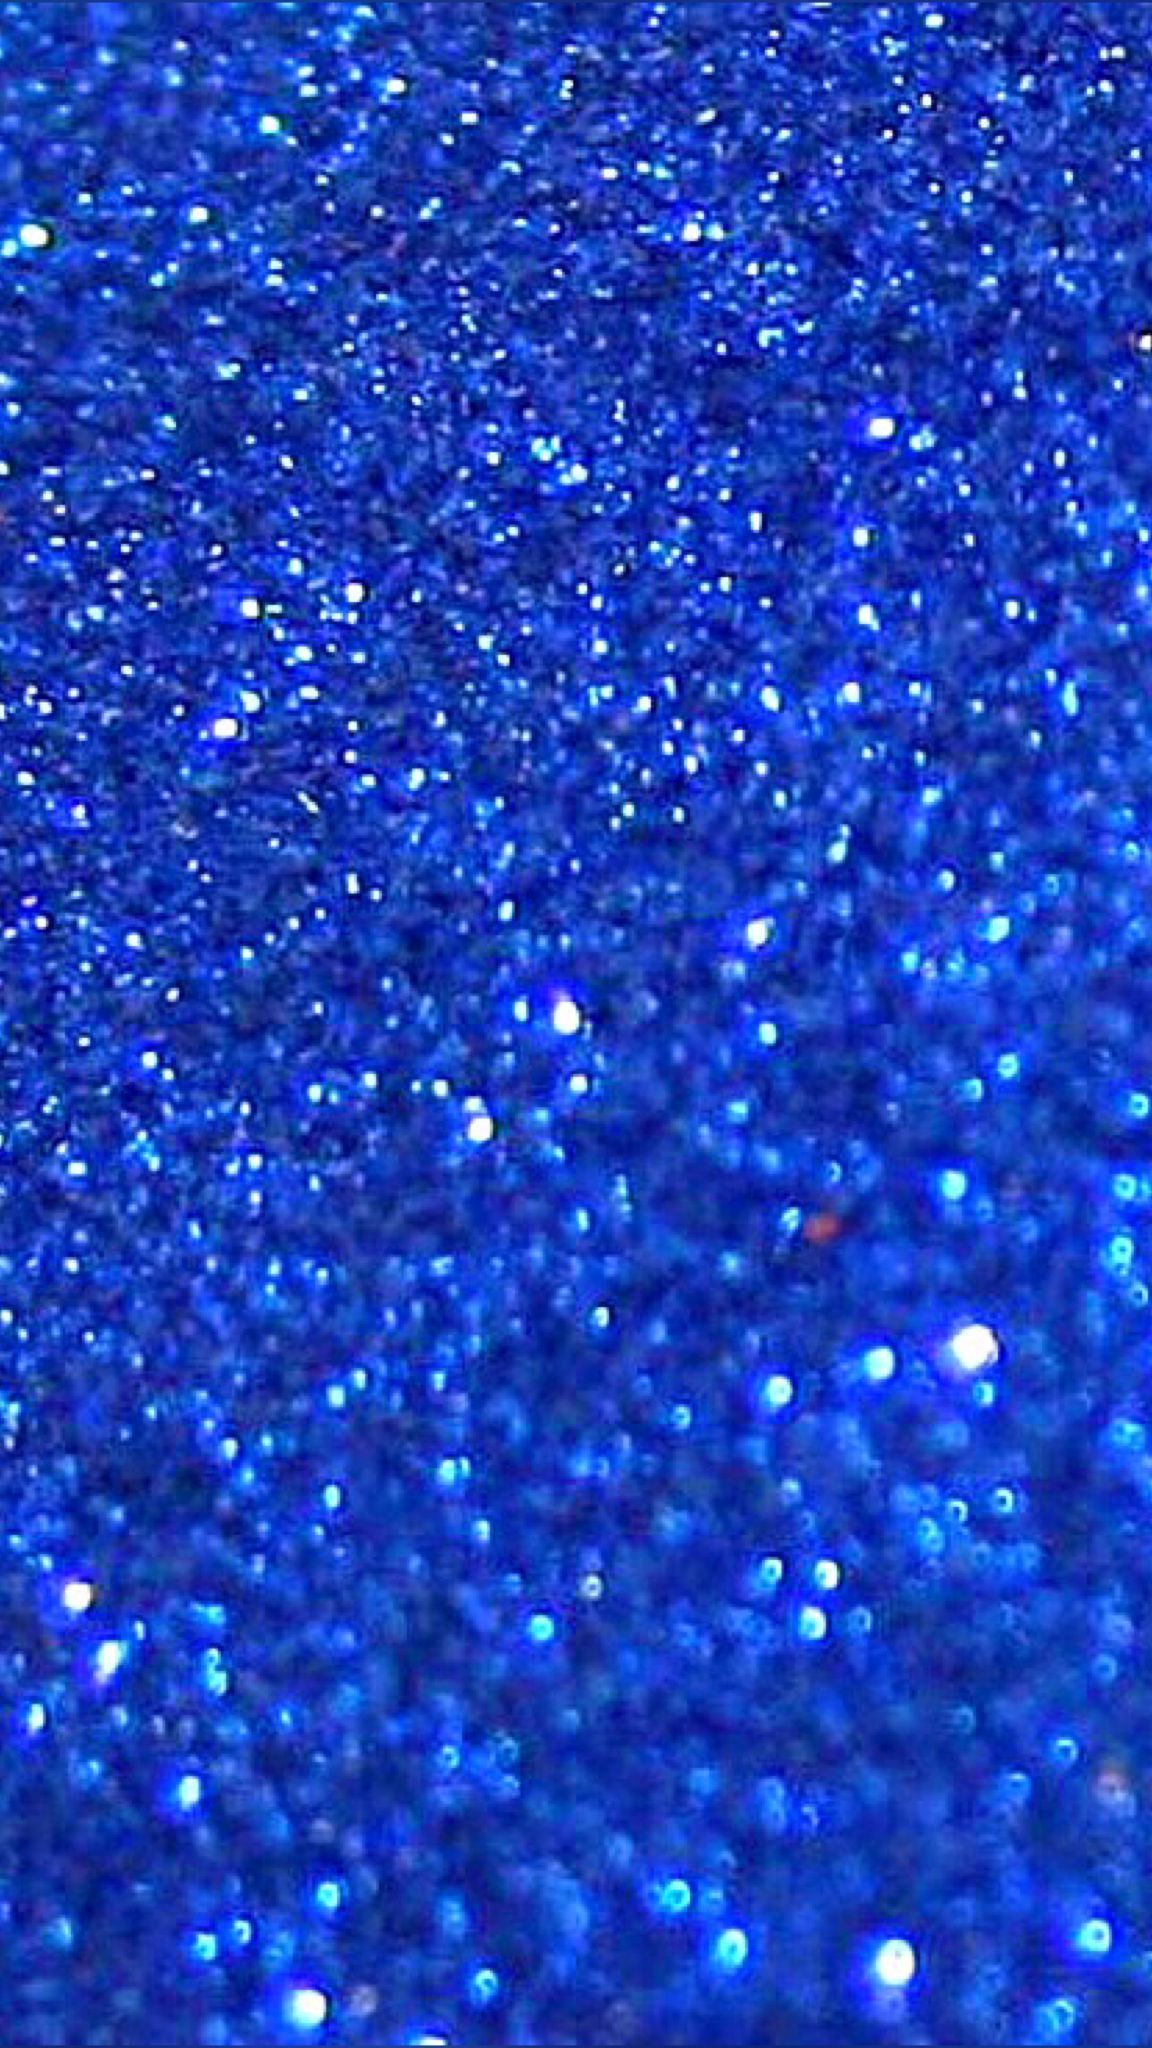 blaue glitzertapete,blau,kobaltblau,funkeln,elektrisches blau,wasser